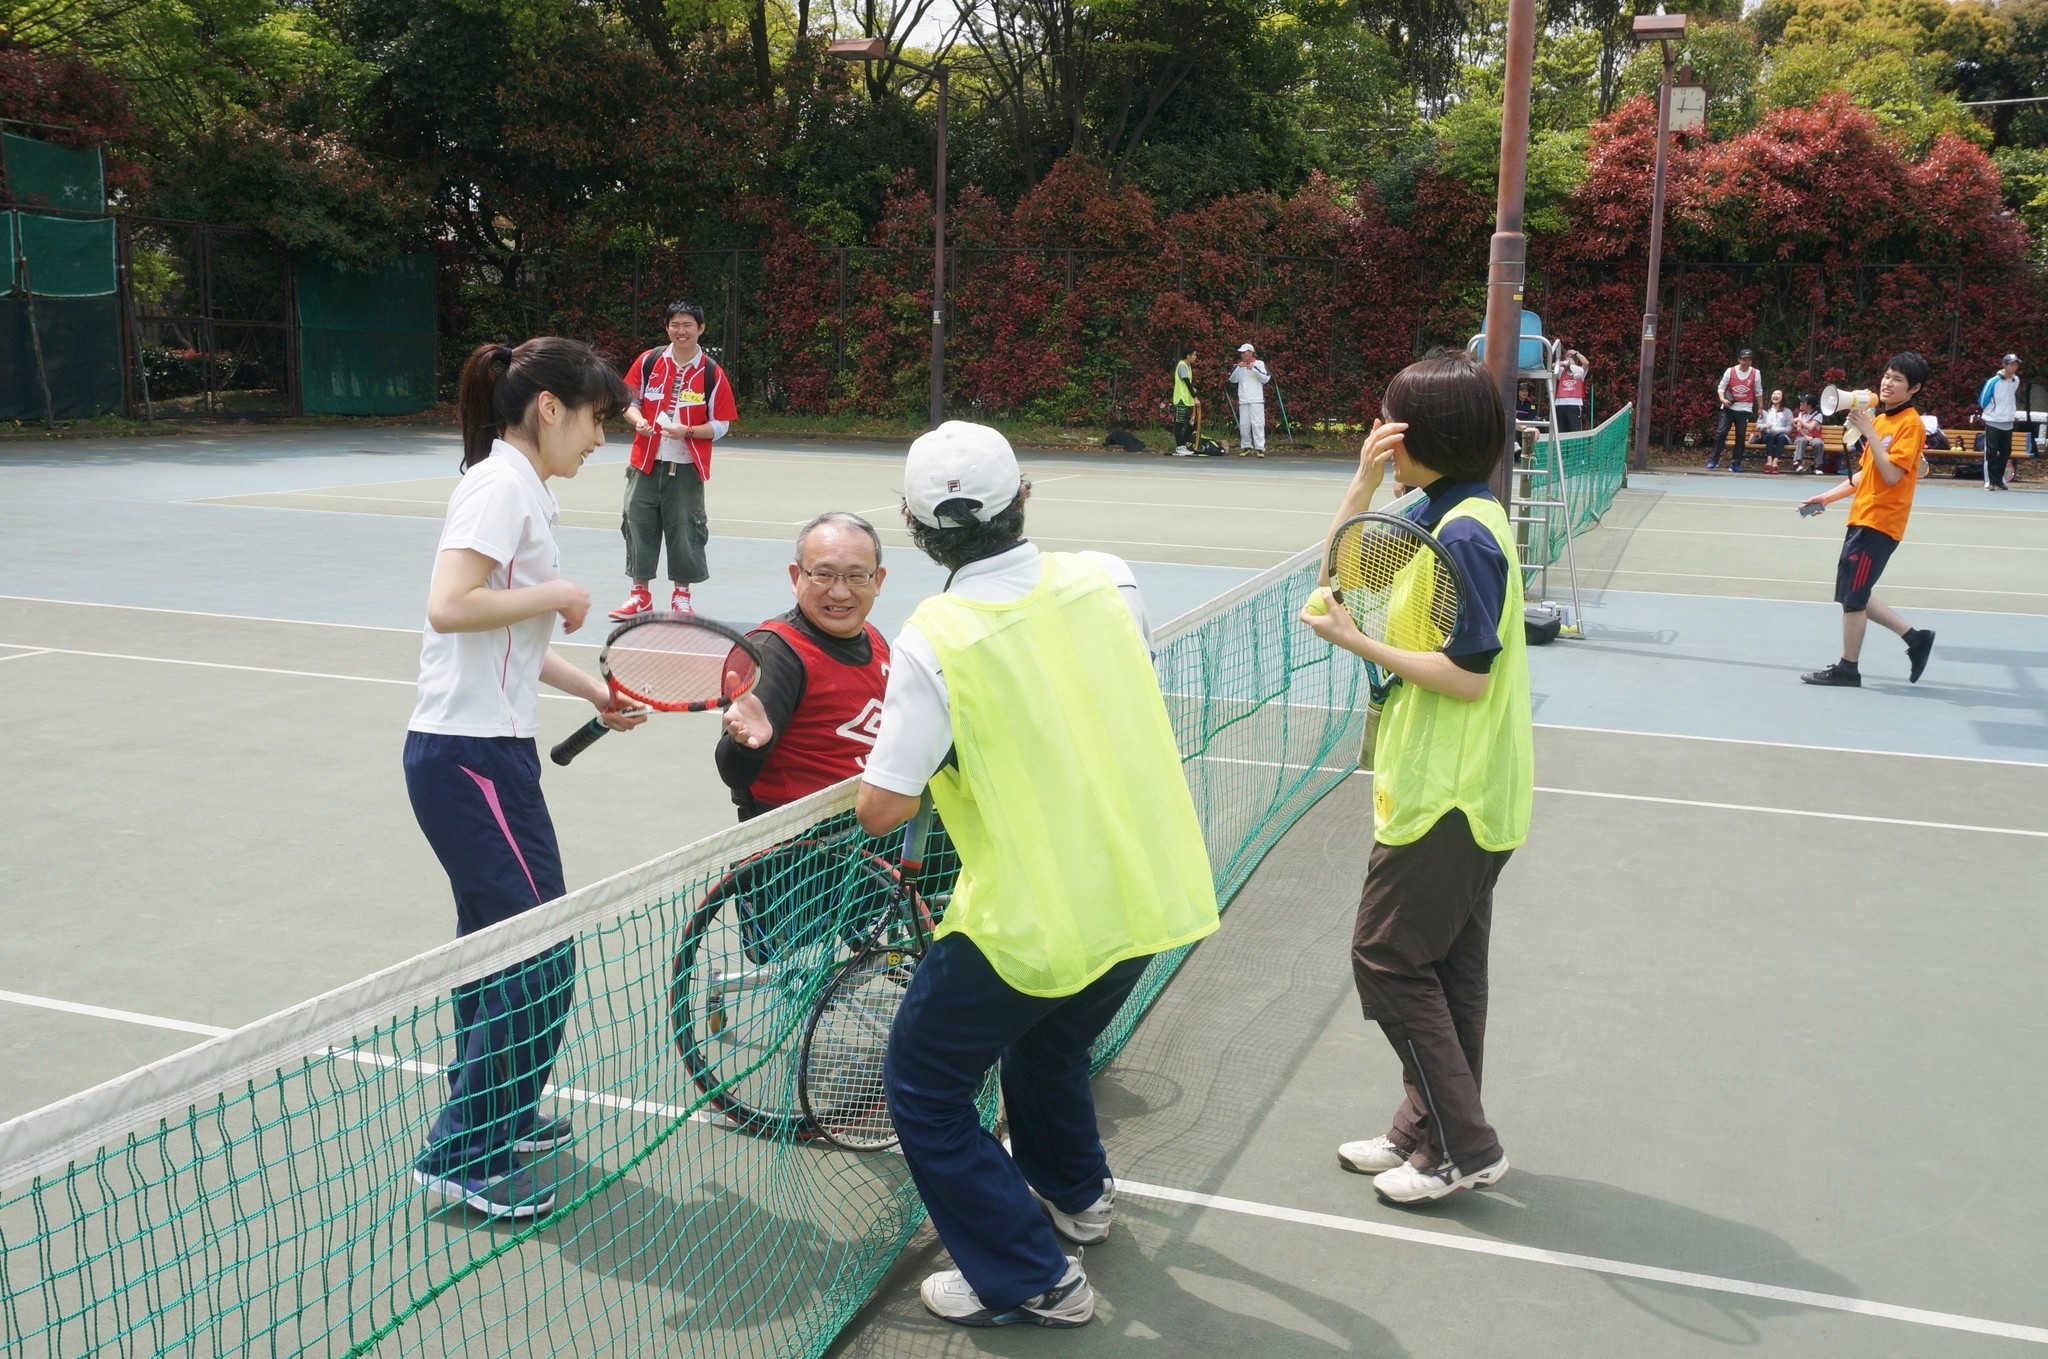 障害者と健常者の交流をはかるテニス大会 6月17日(土)開催 パソナグループ 第23回『エンジェルテニスカップ